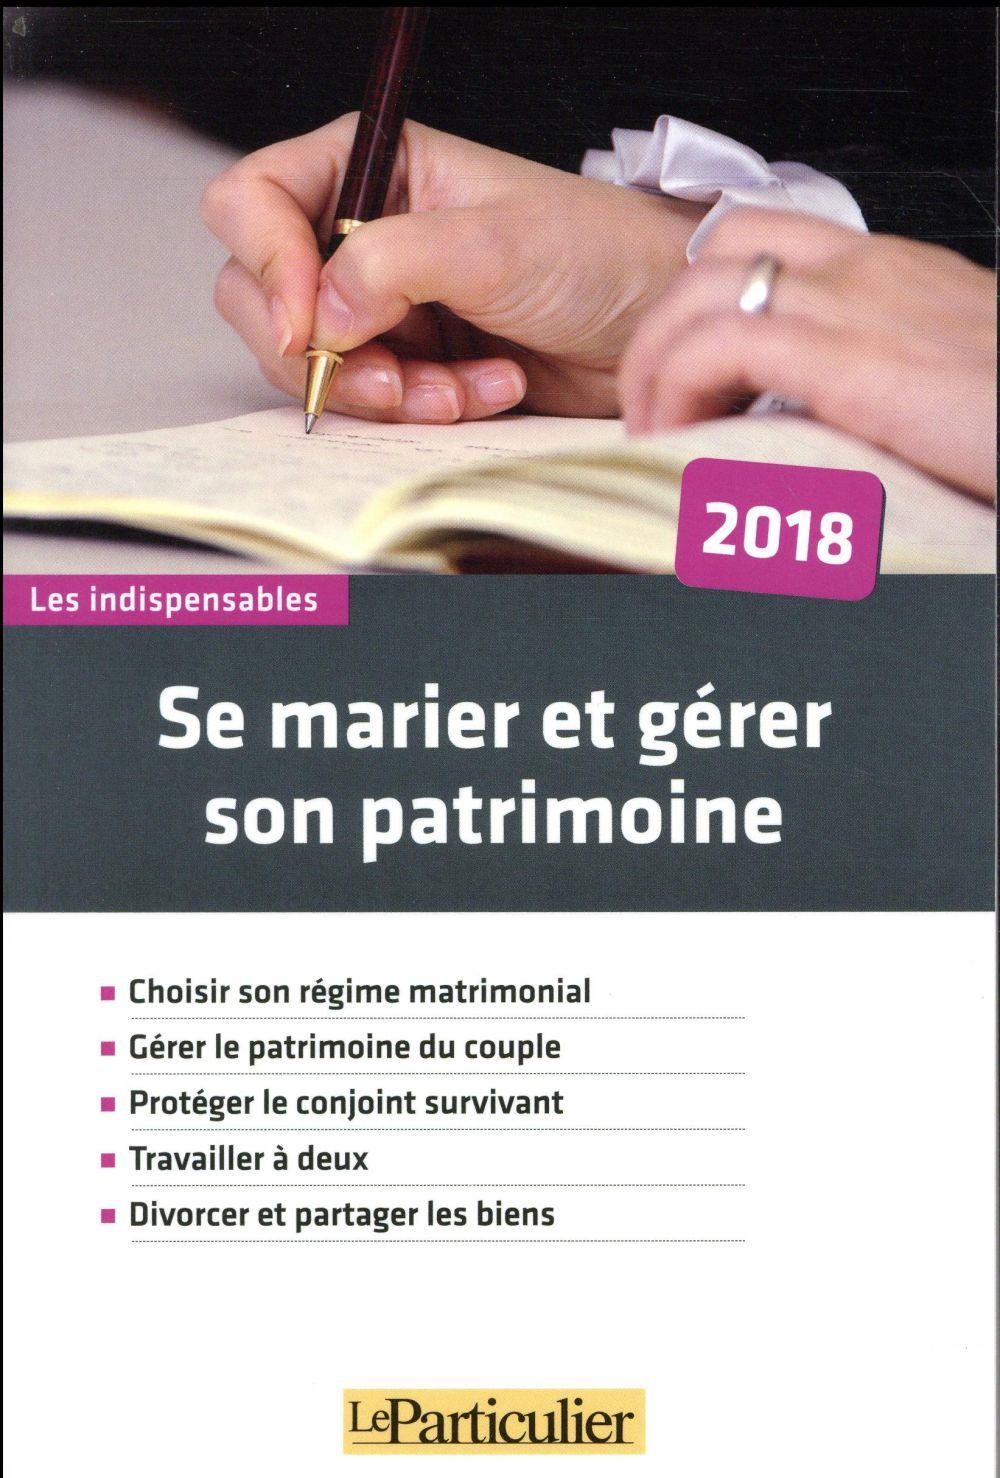 Vente Livre :                                    Se marier et gérer son patrimoine (édition 2018)
- Collectif Le Particulier  - Collectif                                     